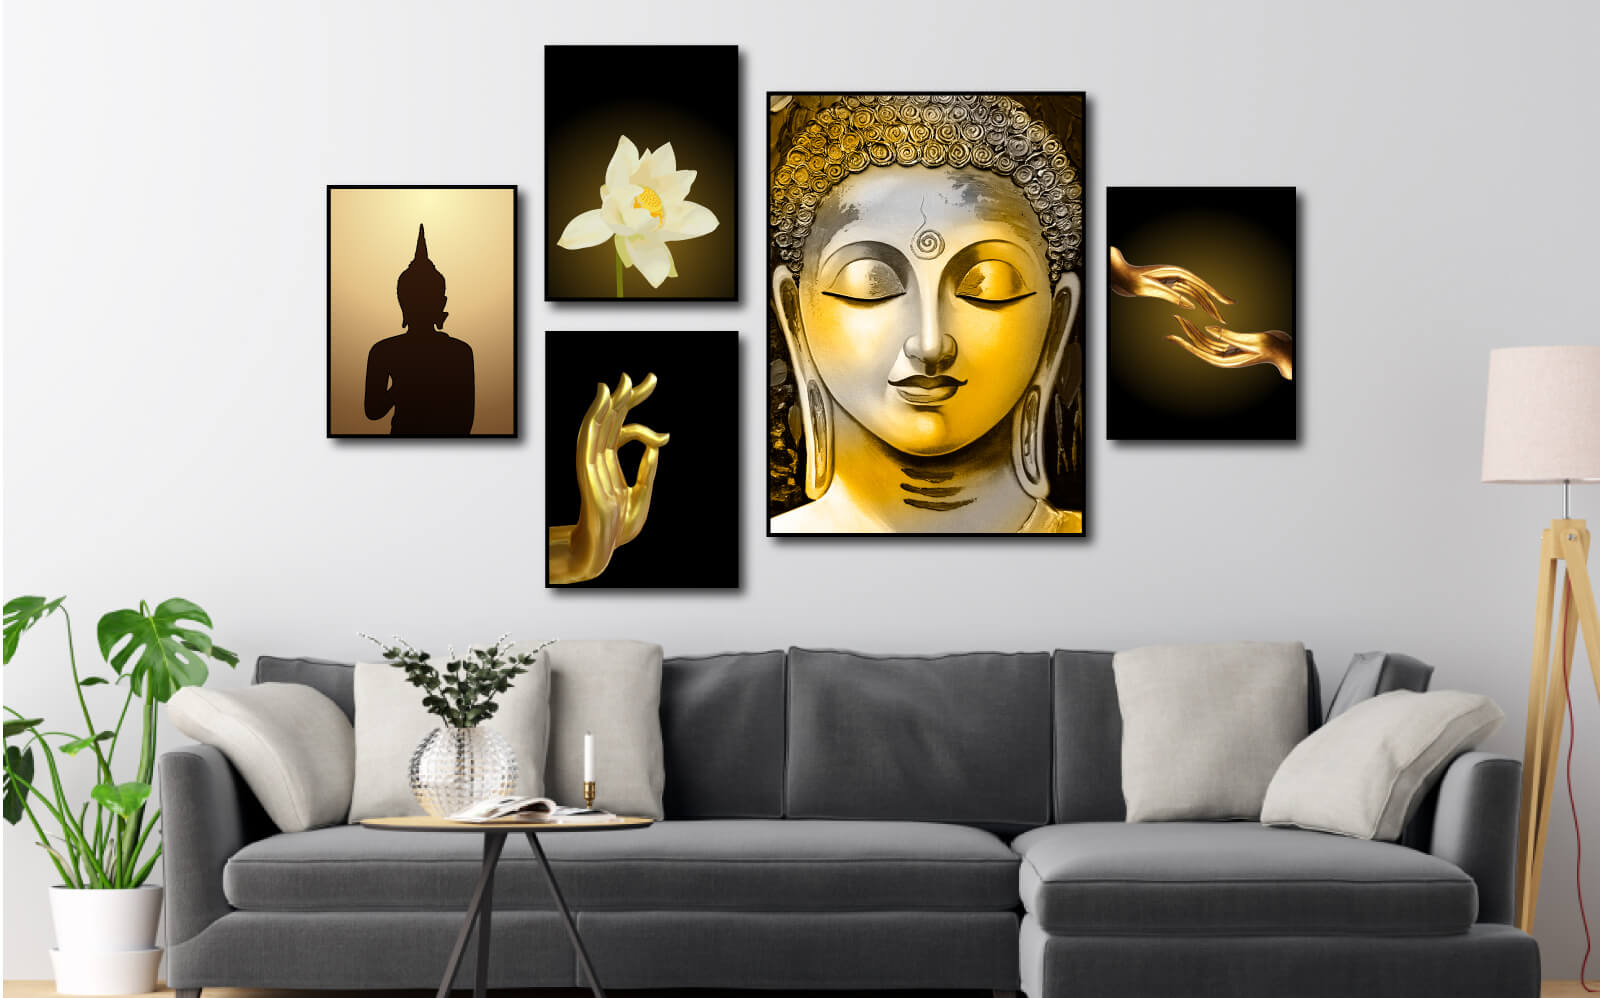 Tranh Phật là những bức tranh phác họa chân dung của Phật như tranh Phật A Di Đà, Phật Bà Quan Âm hay Phật Di Lặc